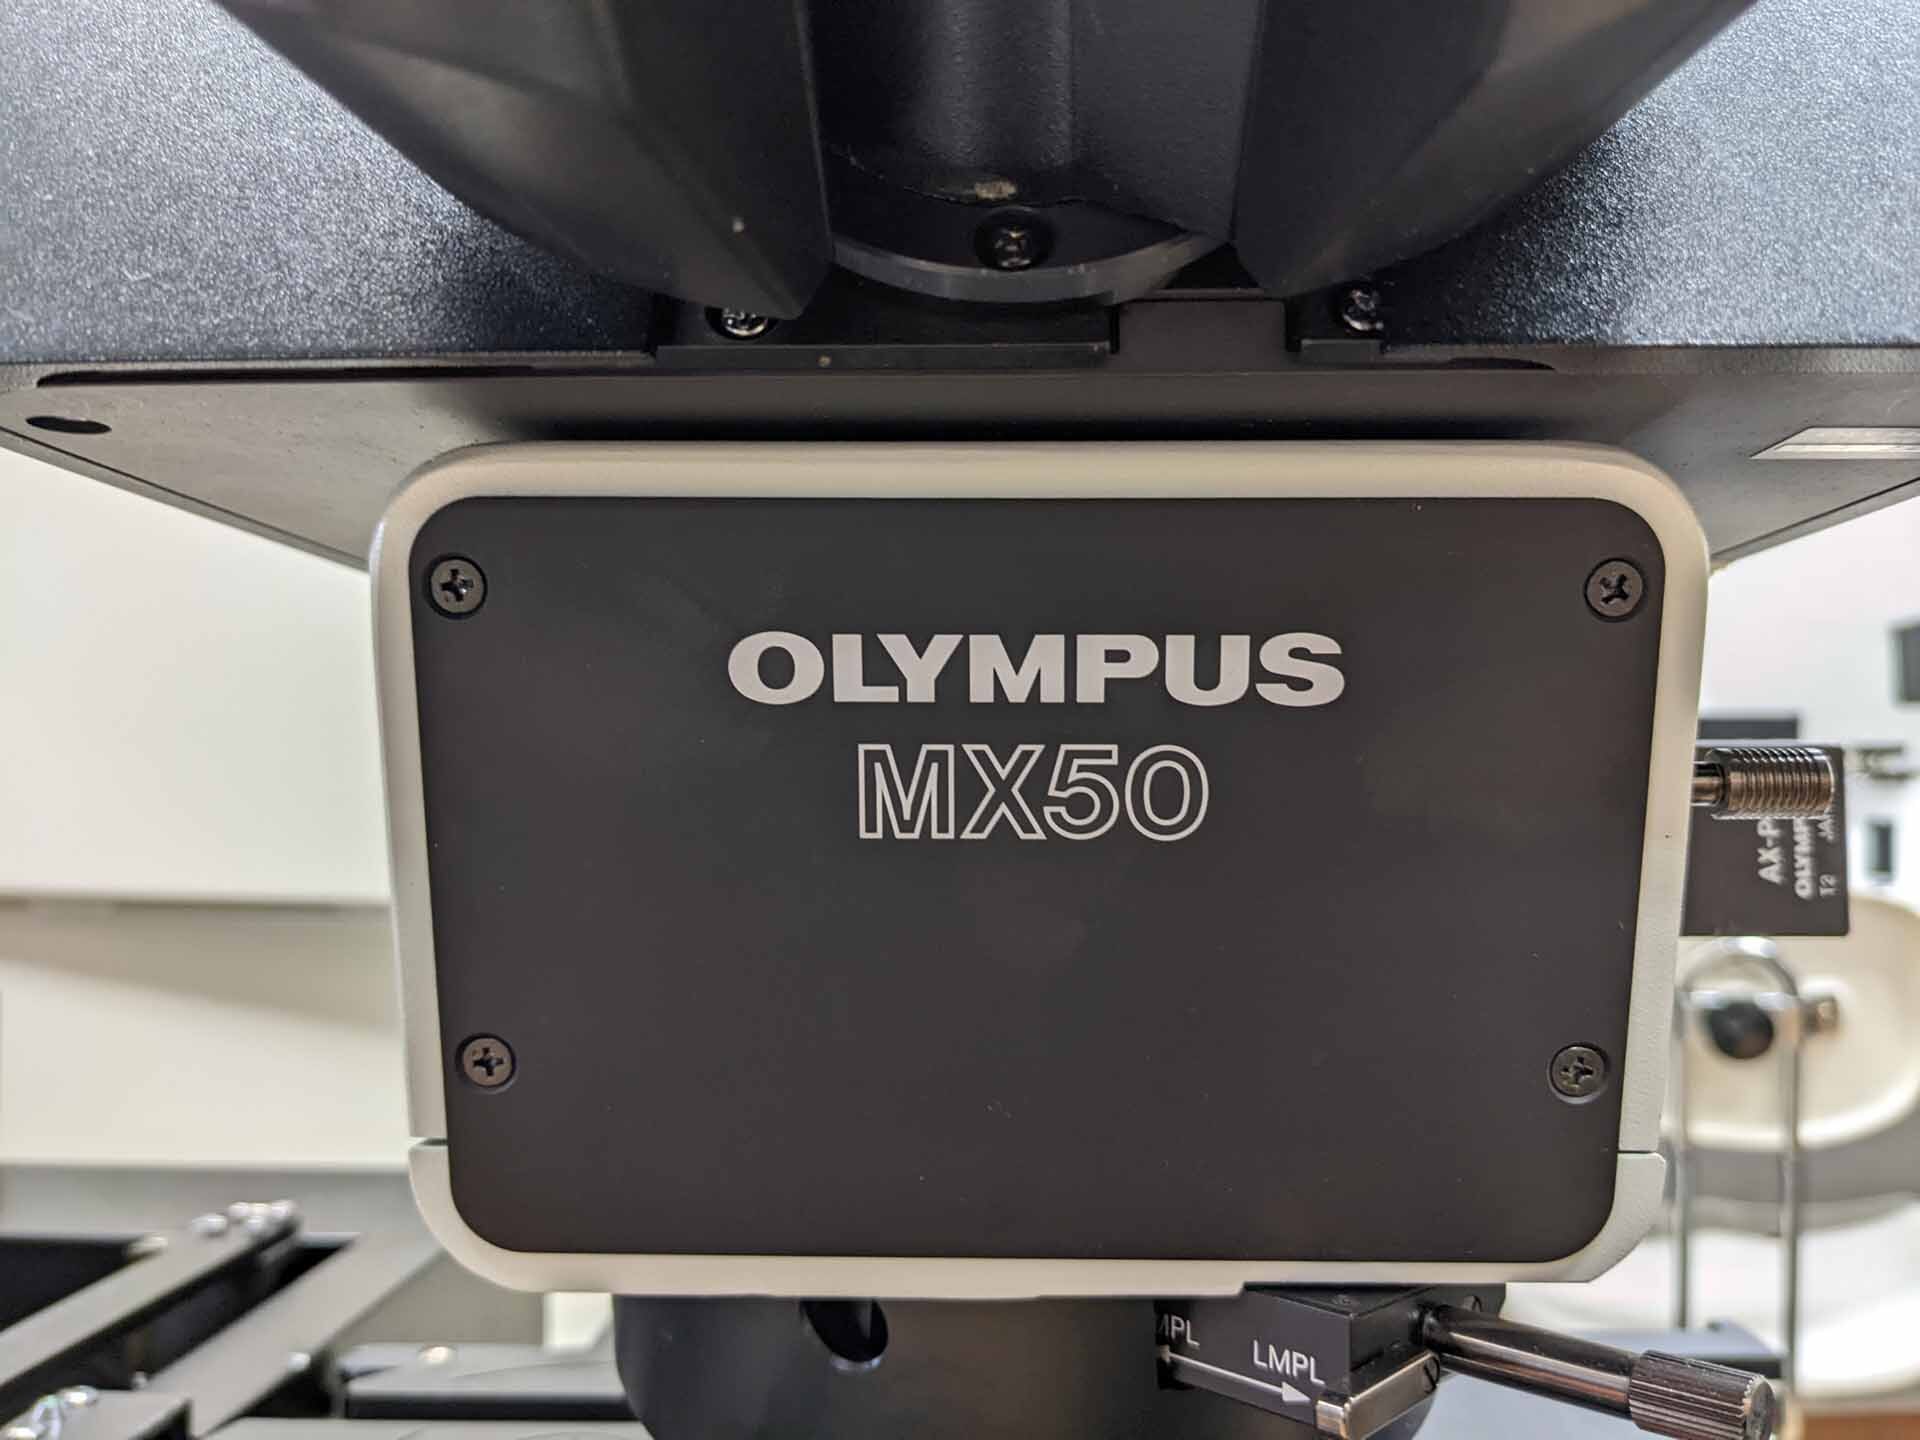 图为 已使用的 OLYMPUS MX50A-F 待售